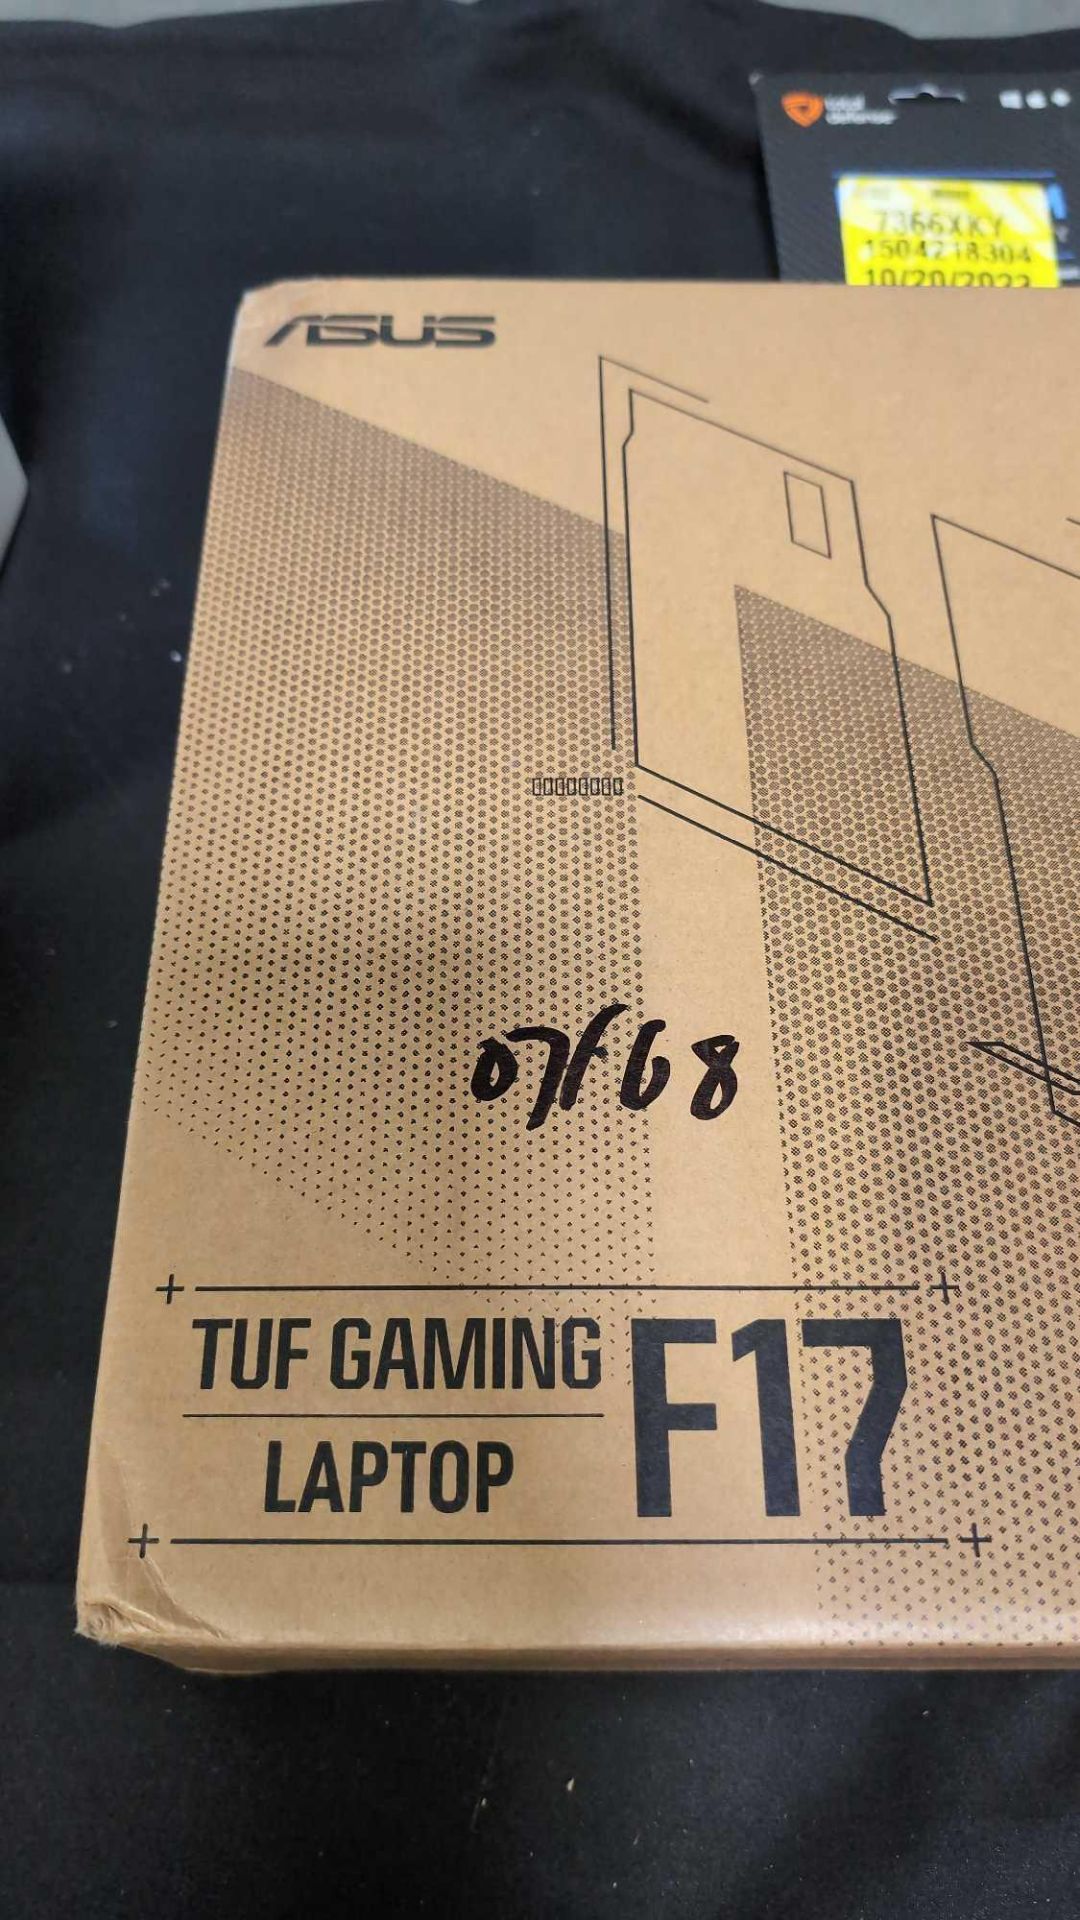 Asus The Gaming Laptop F17 Tuf gaming - Image 2 of 3